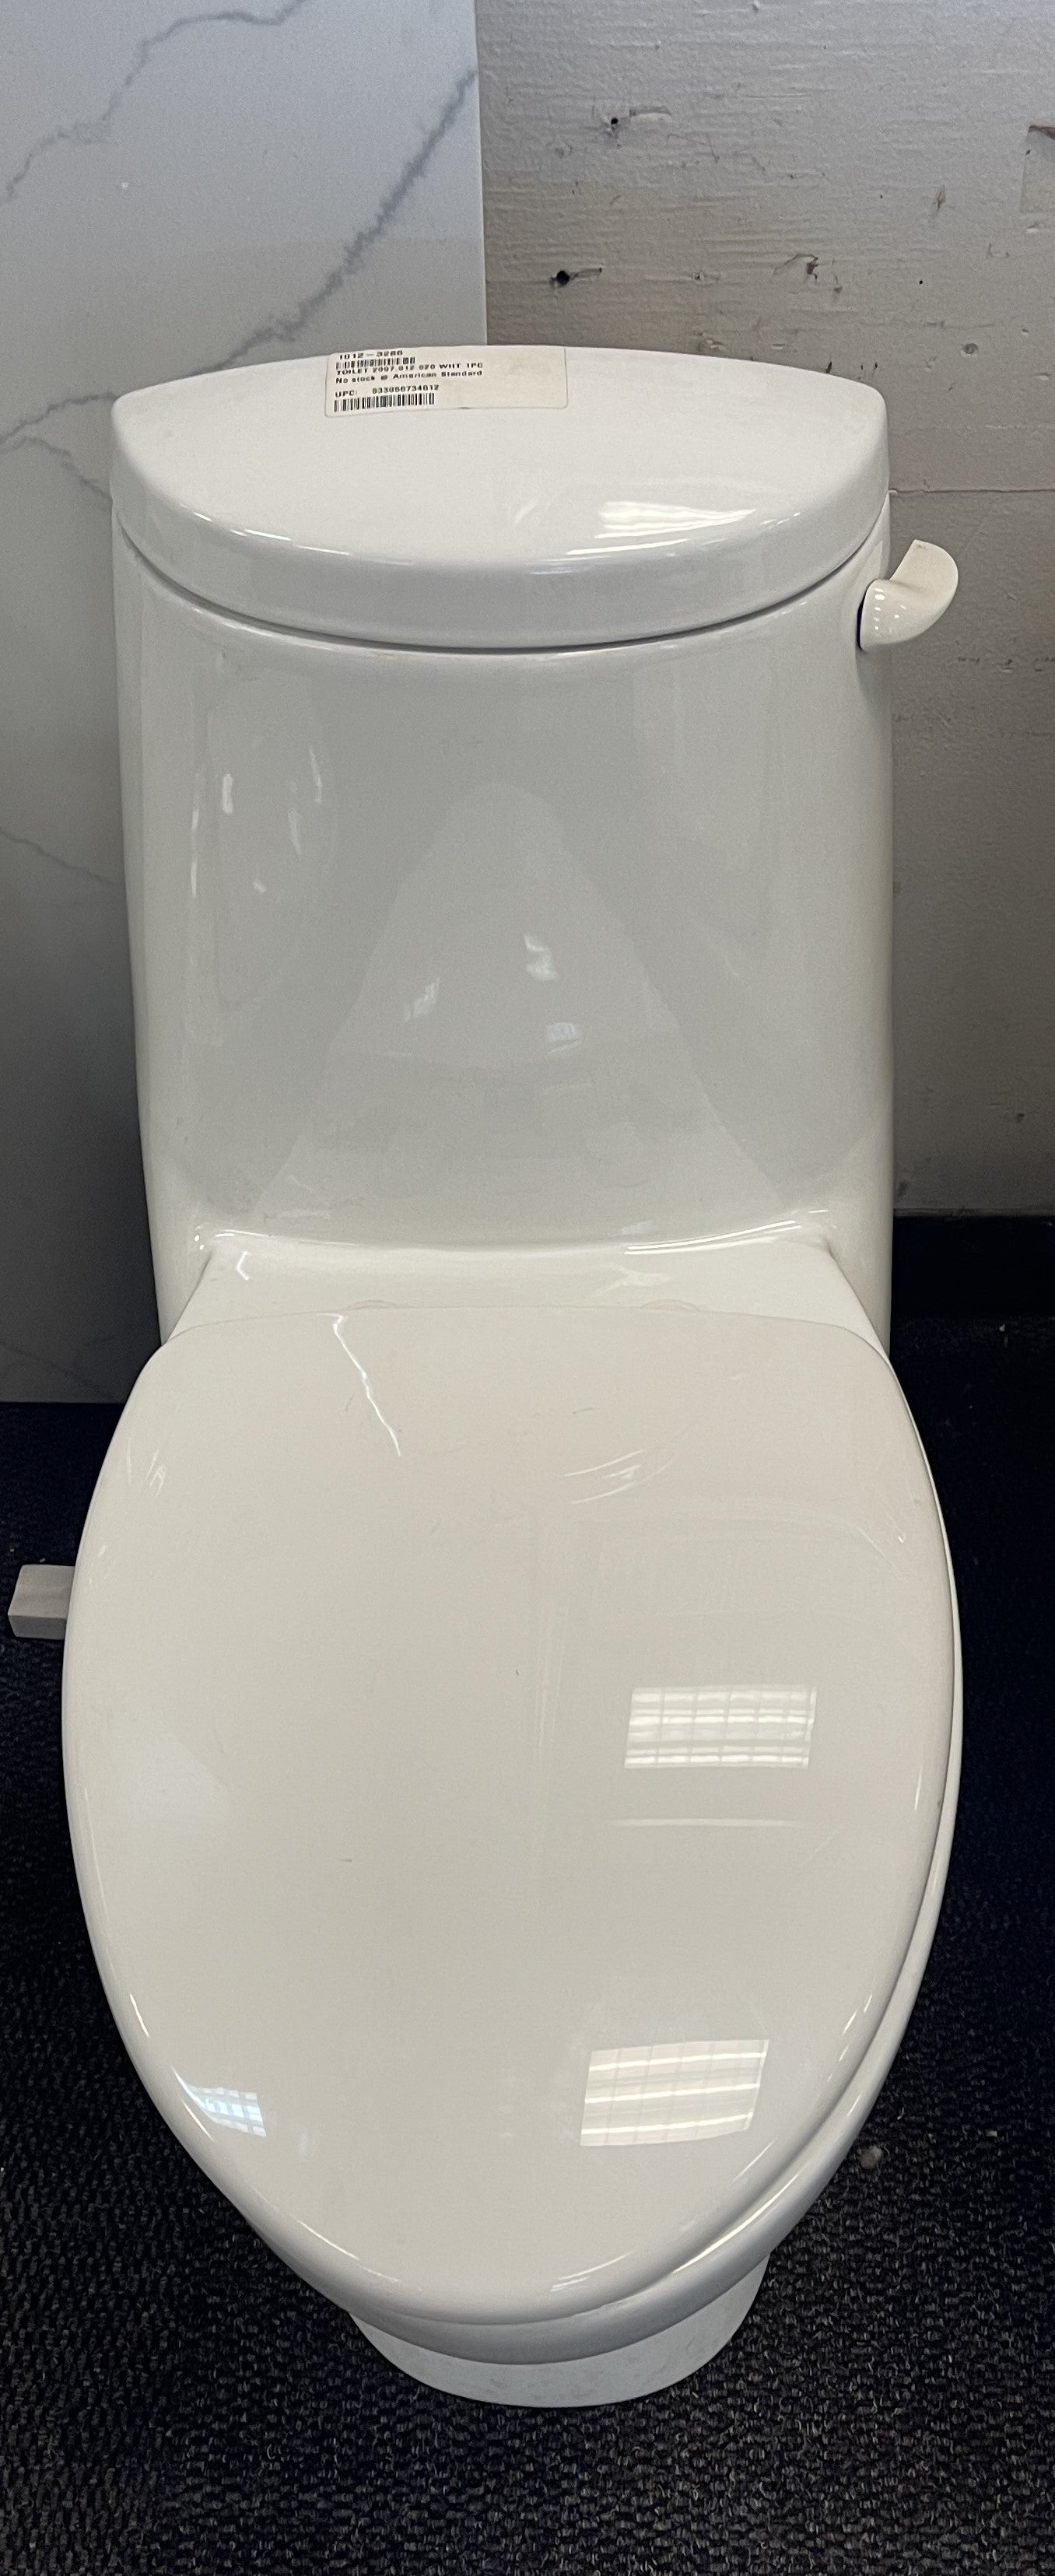 New Savona 1-pc Toilet w/Seat Elongated White